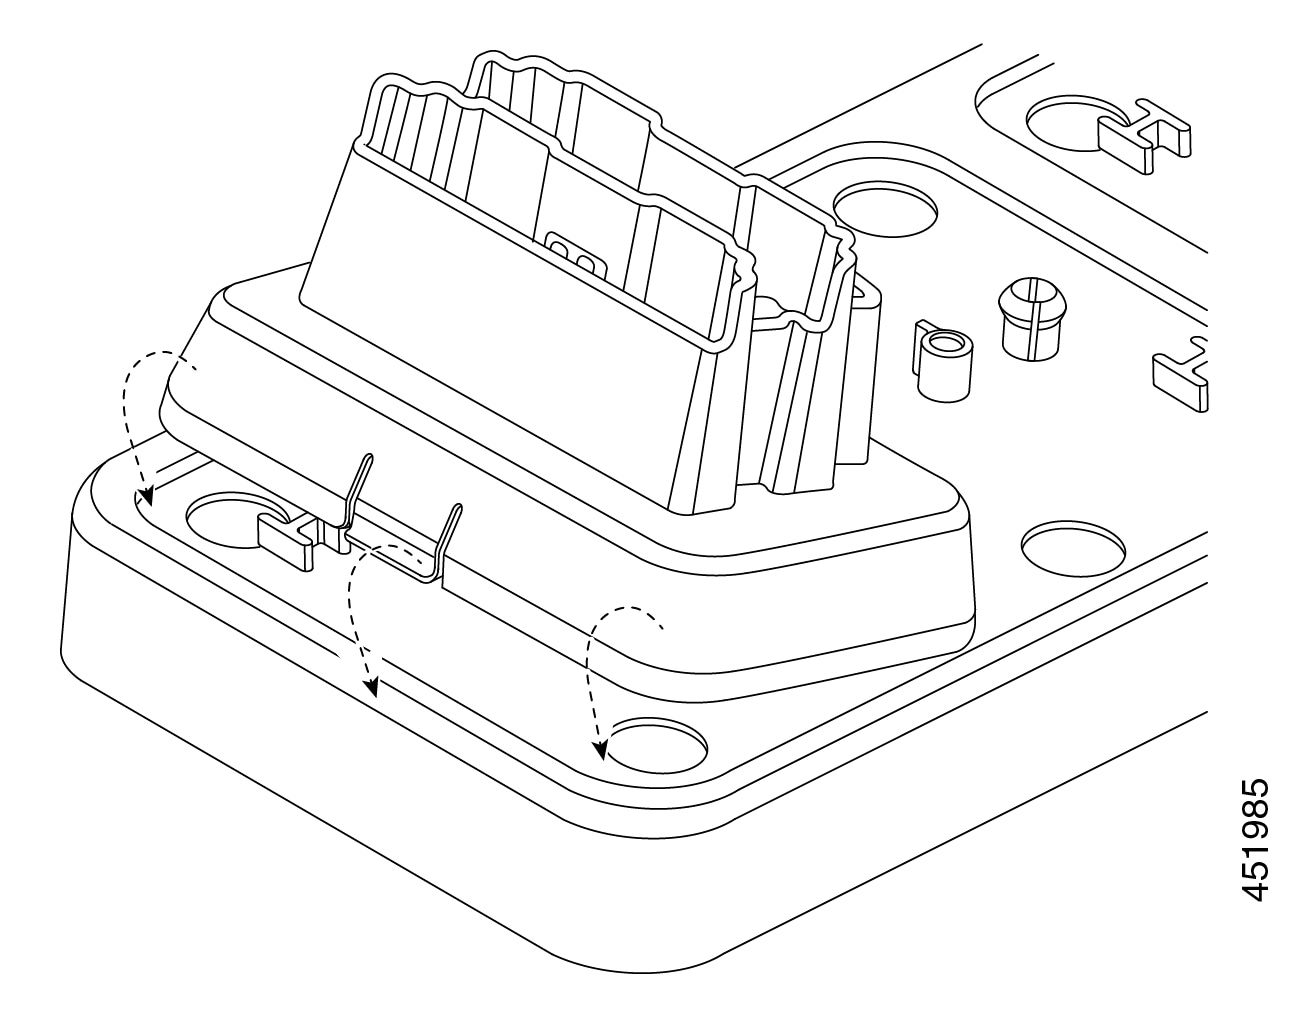 Abbildung des Tischladegeräts, wie es nach vorne gekippt wird, um es in der Mehrfachladebasis einrasten zu lassen.